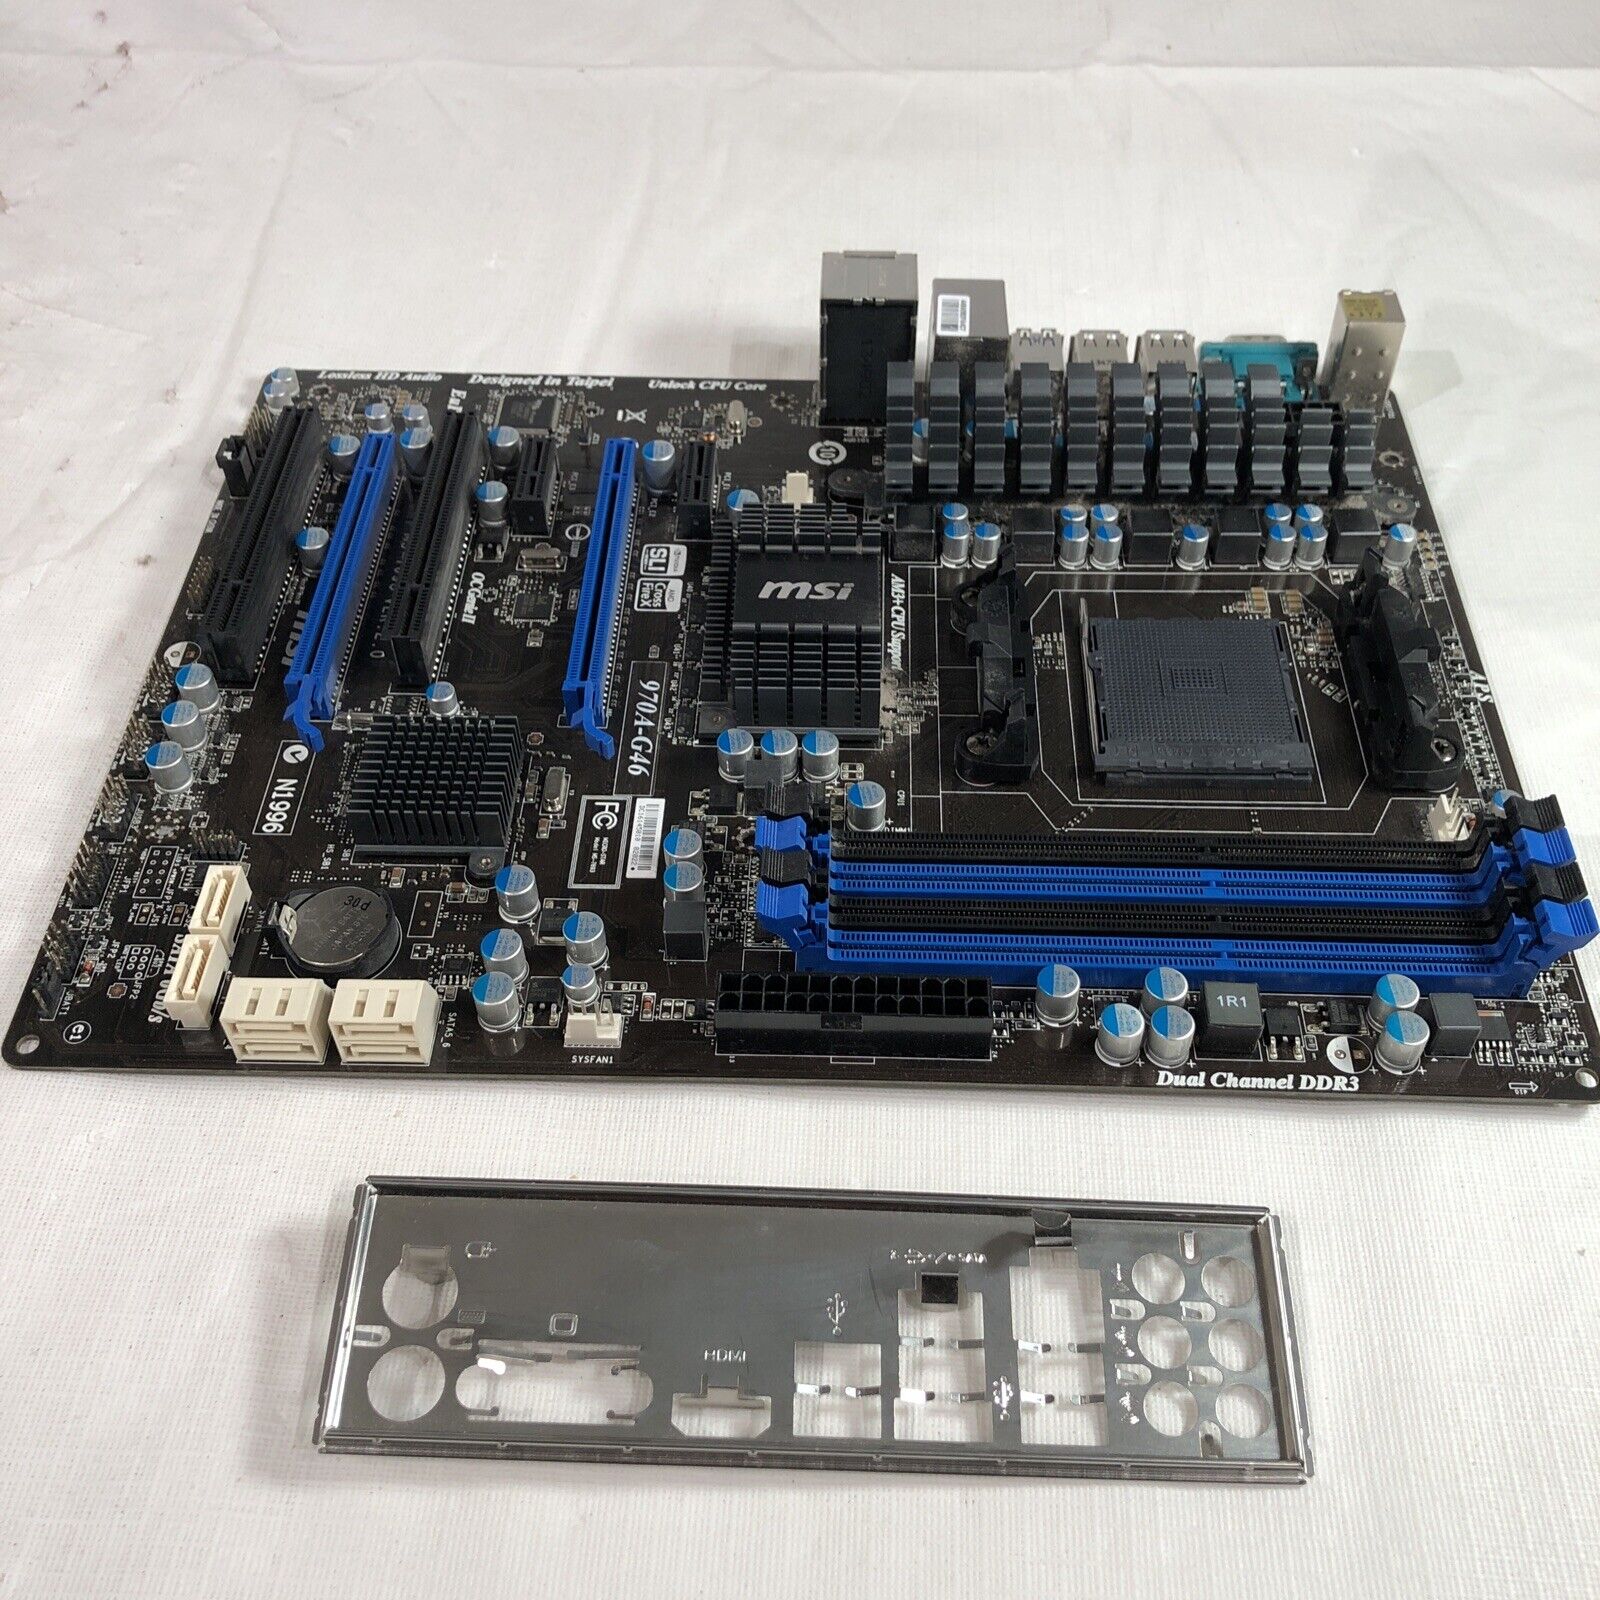 MSI 970A-G46 AM3+ AMD 970 FX Motherboard ATX Windows 10 Ready USB 3.0 Serial